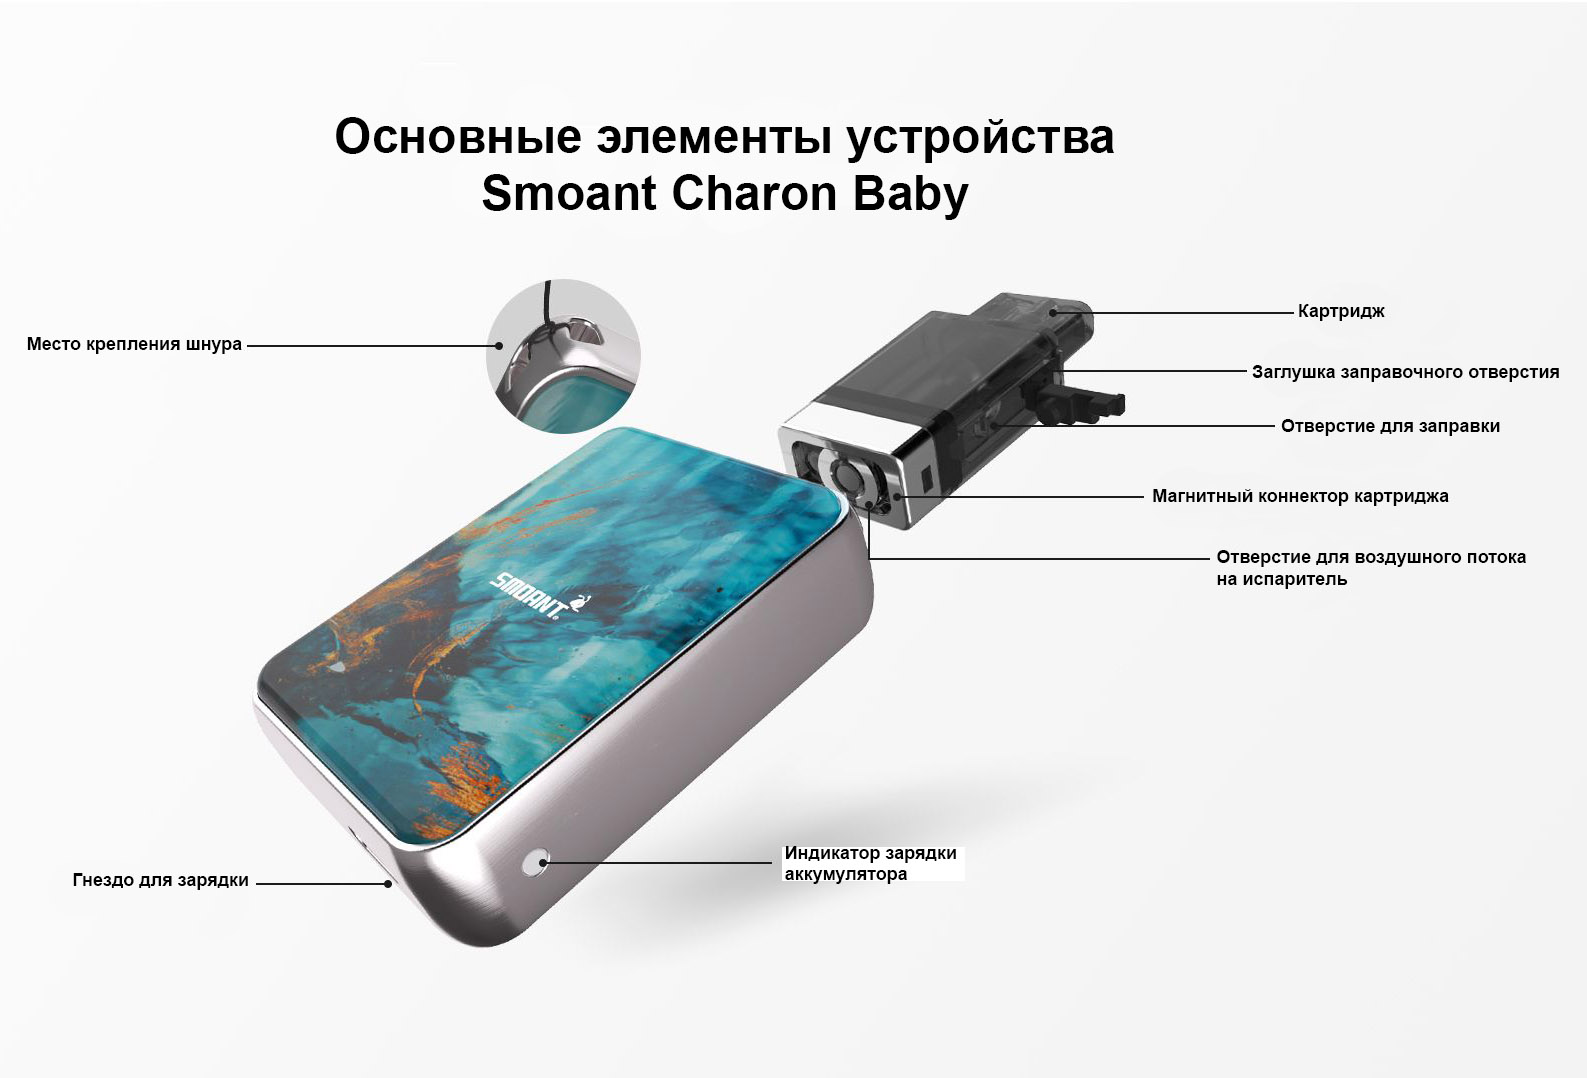 Описание устройства Smoant Charon Baby